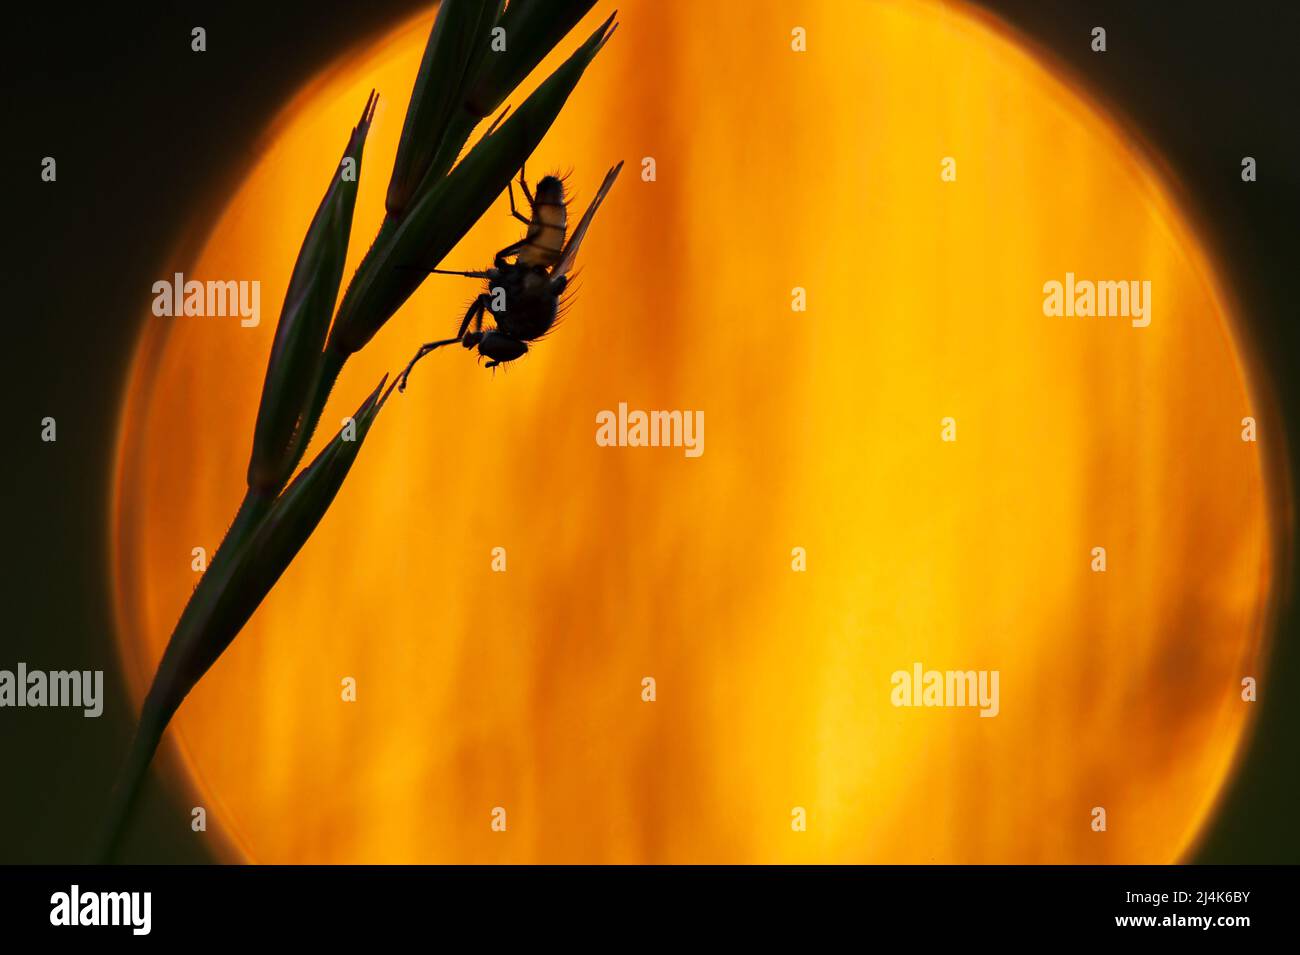 Mouche reposant sur l'inflorescence de l'herbe contre les lumières du coucher du soleil. Mise au point à la volée, faible profondeur de champ, arrière-plan bokeh. Banque D'Images